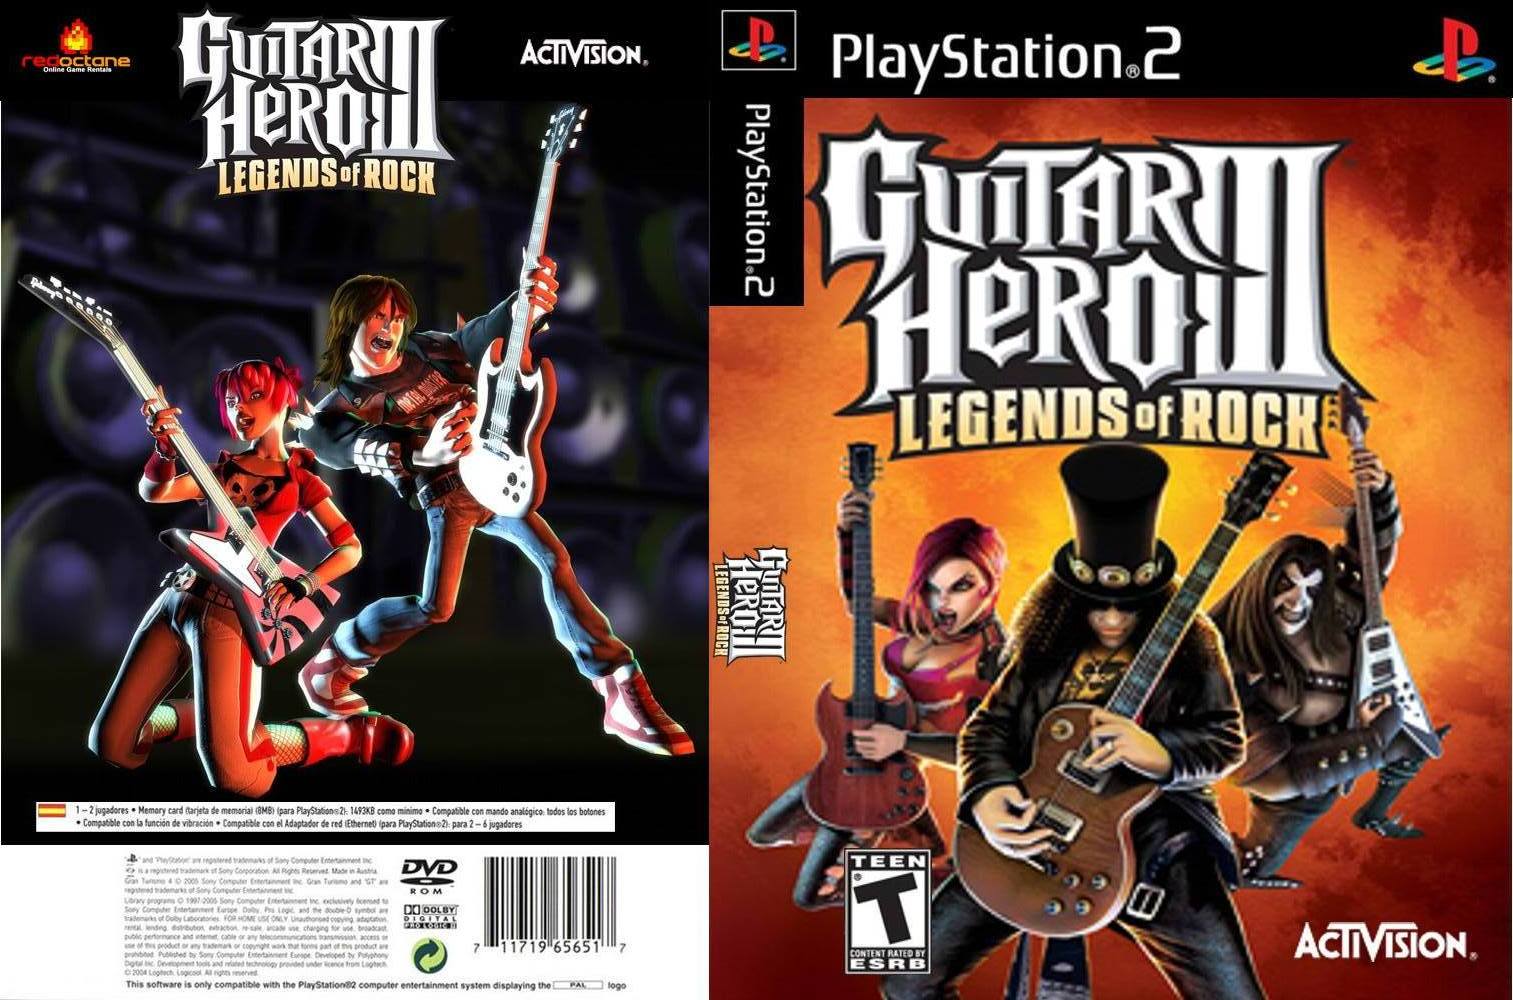 Guitar Hero 3 Ps2